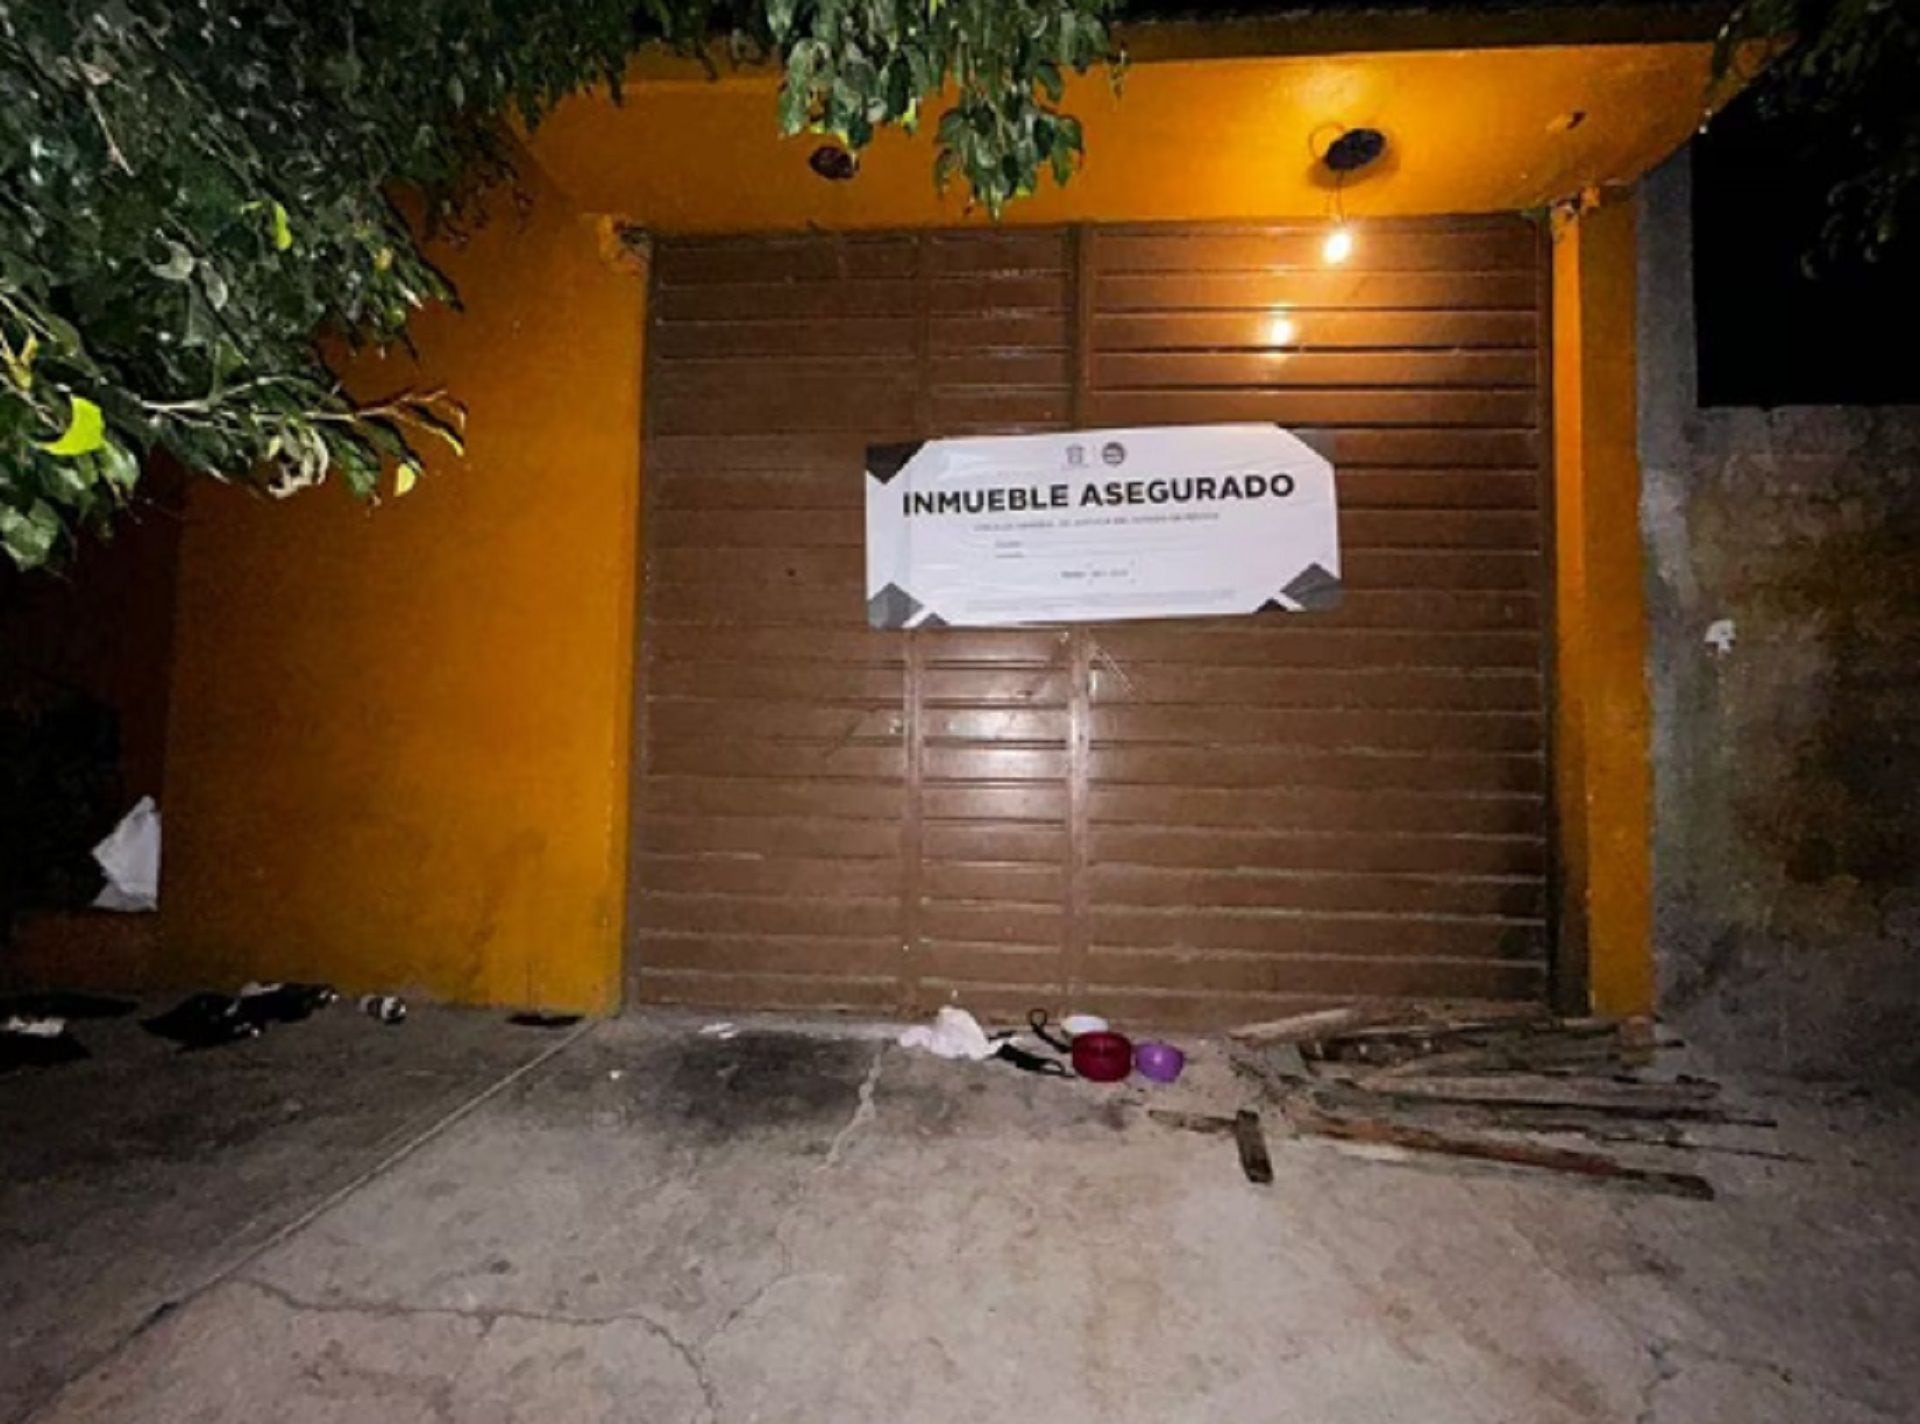 Los inmuebles en los que se encontraron a los migrantes fueron aseguradas por las autoridades. (Policía Municipal Ecatepec)